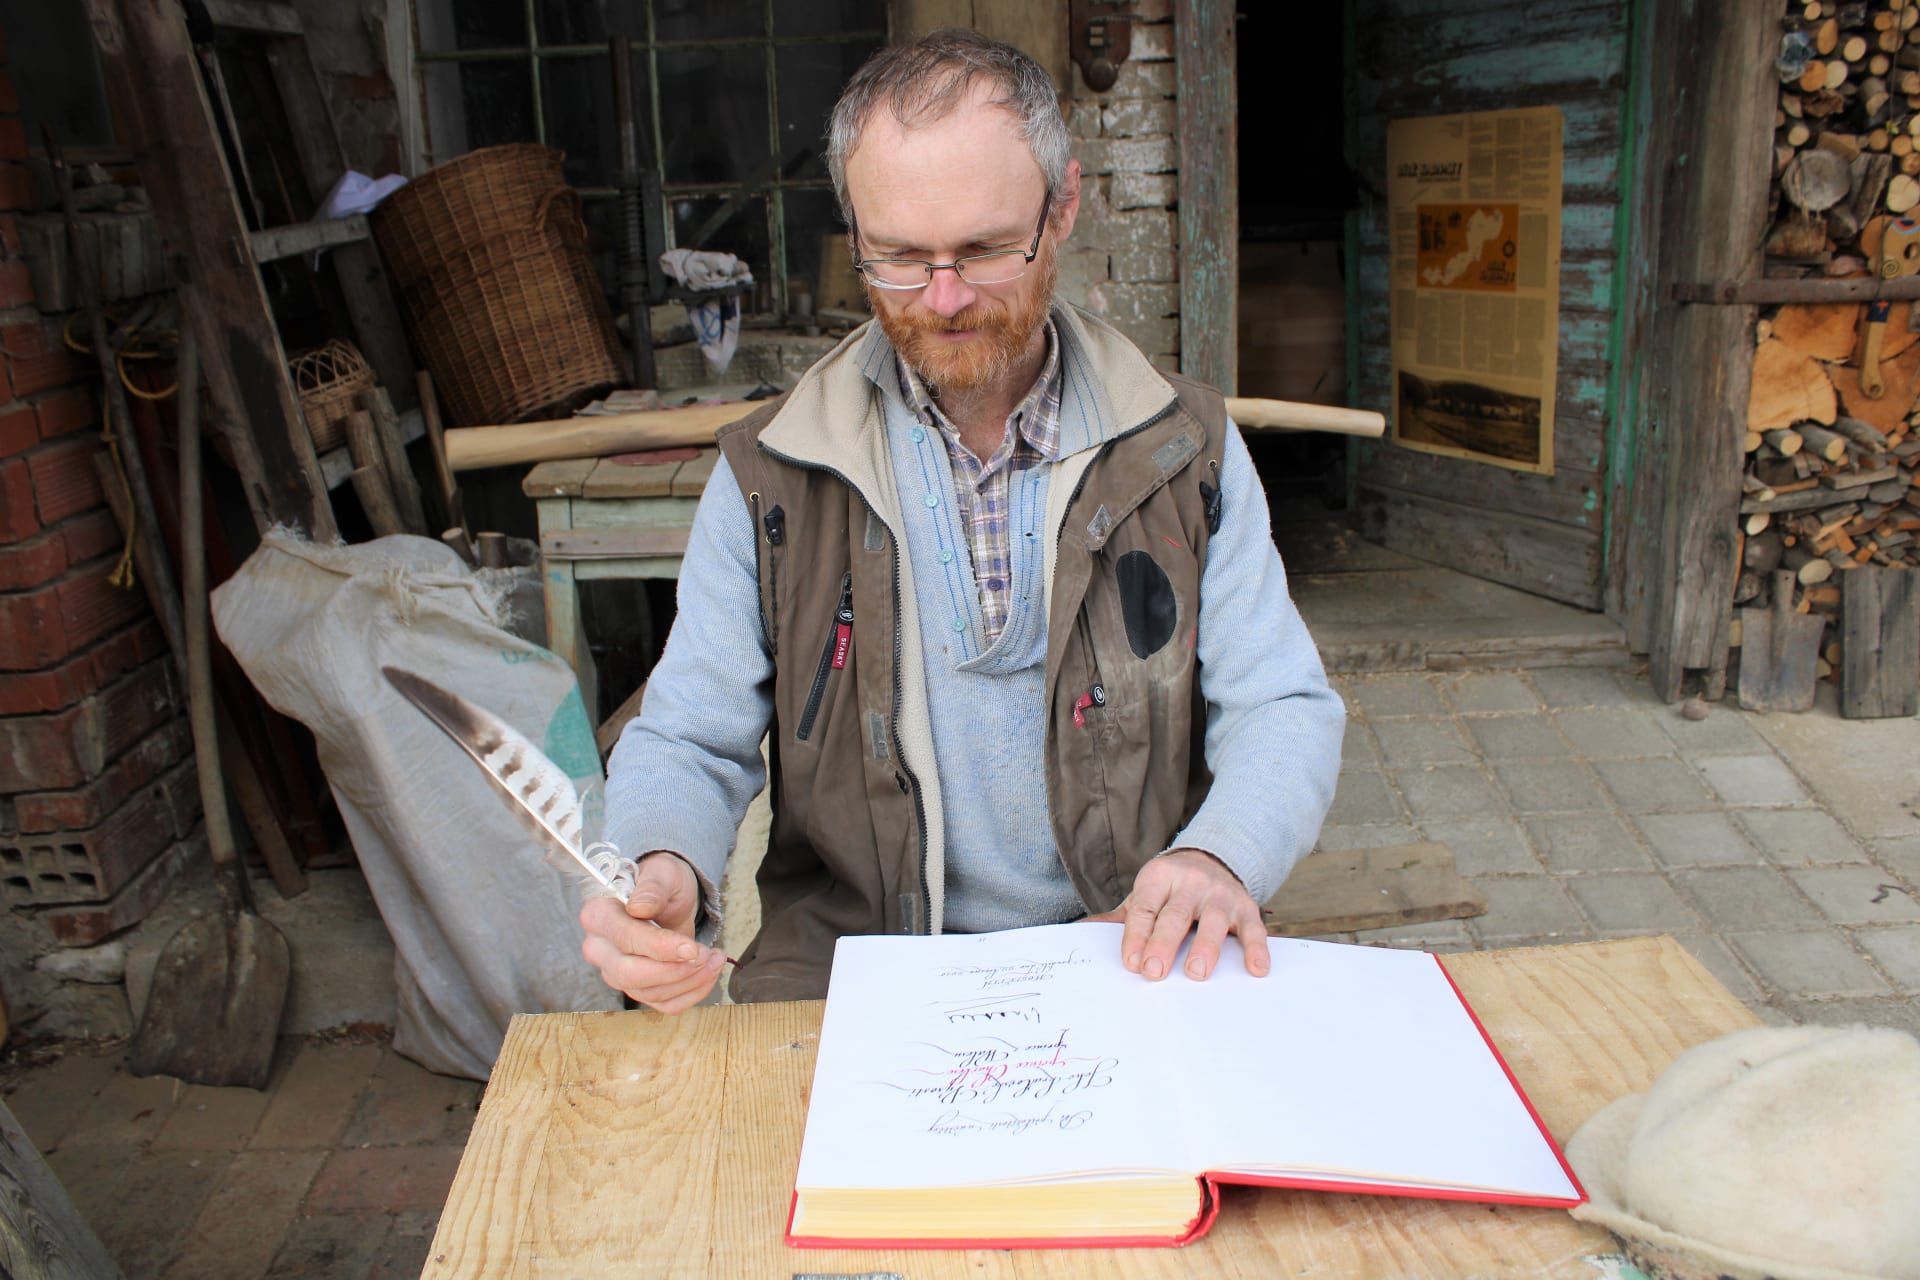 Hostětín na Moravě, návštěva prince Charlese dne 22. března 2010. Kronikář Vladimír Jál s husím brkem. V kronice ukazuje královský podpis.